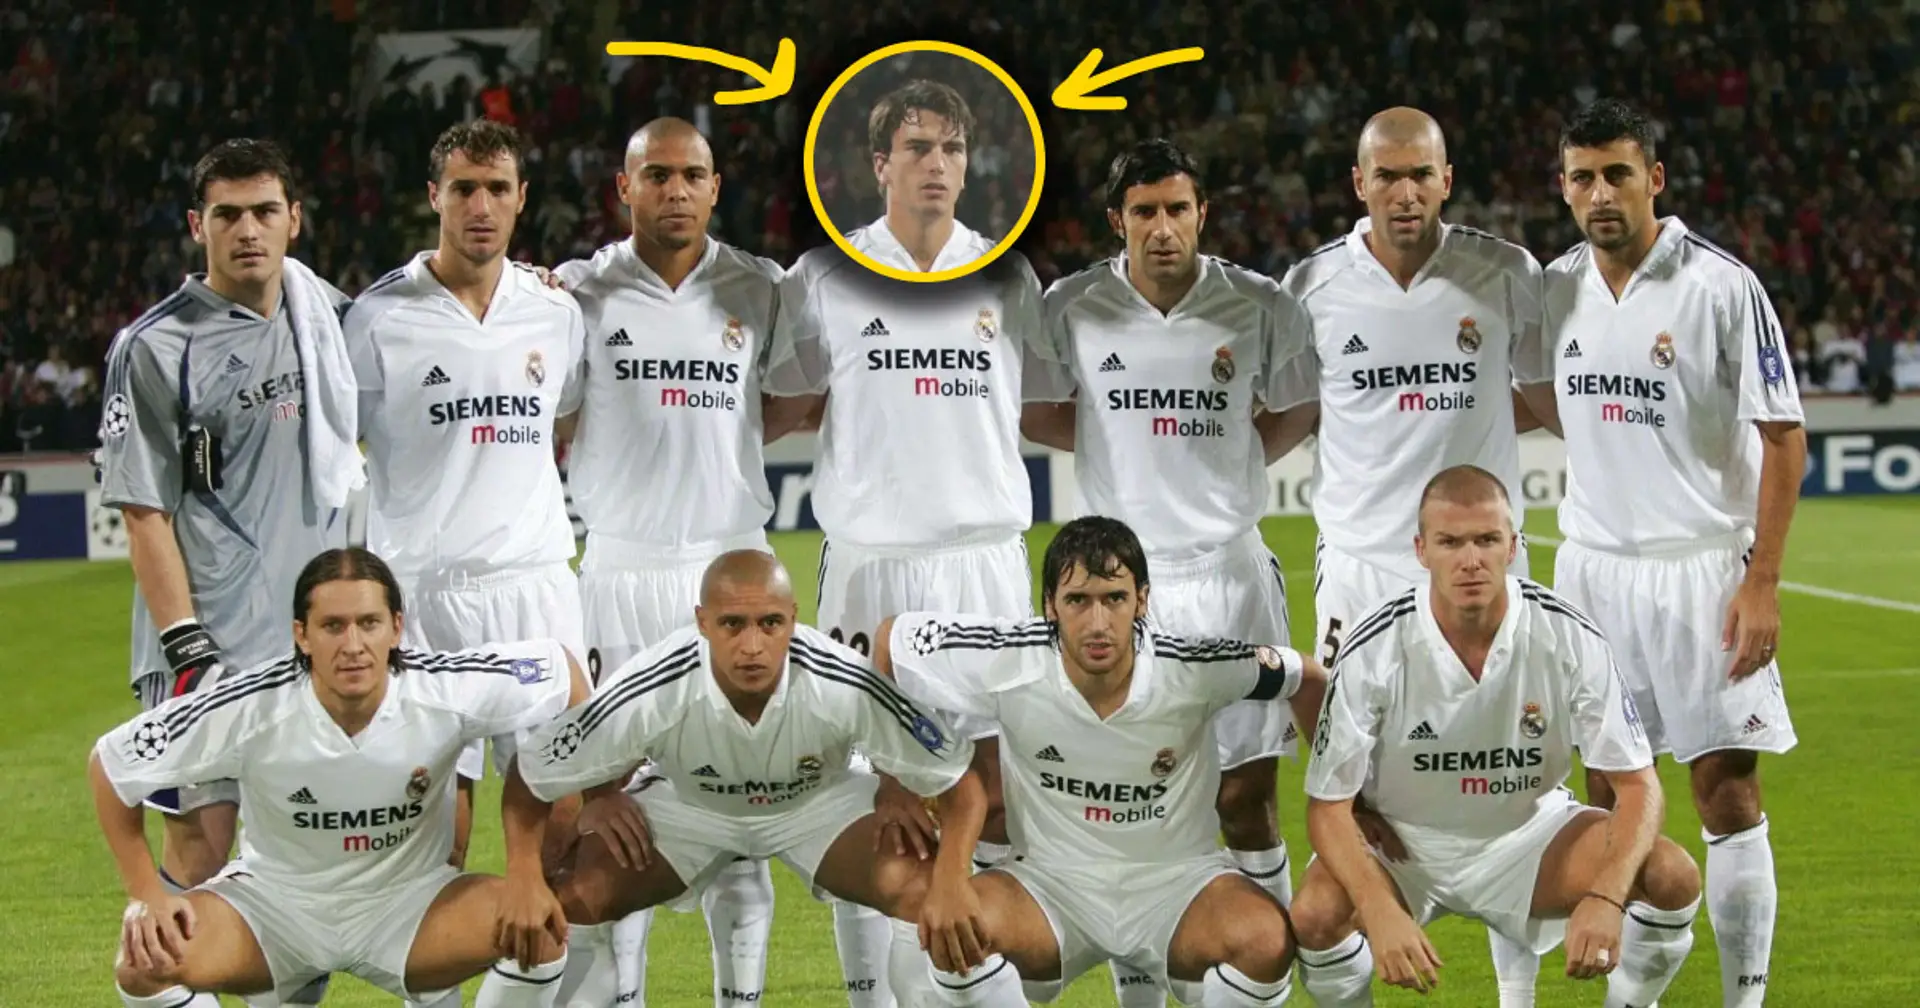 ¿Quién es este jugador del Real Madrid en el equipo de Galácticos? Tiene que ver con Zidane - explicado